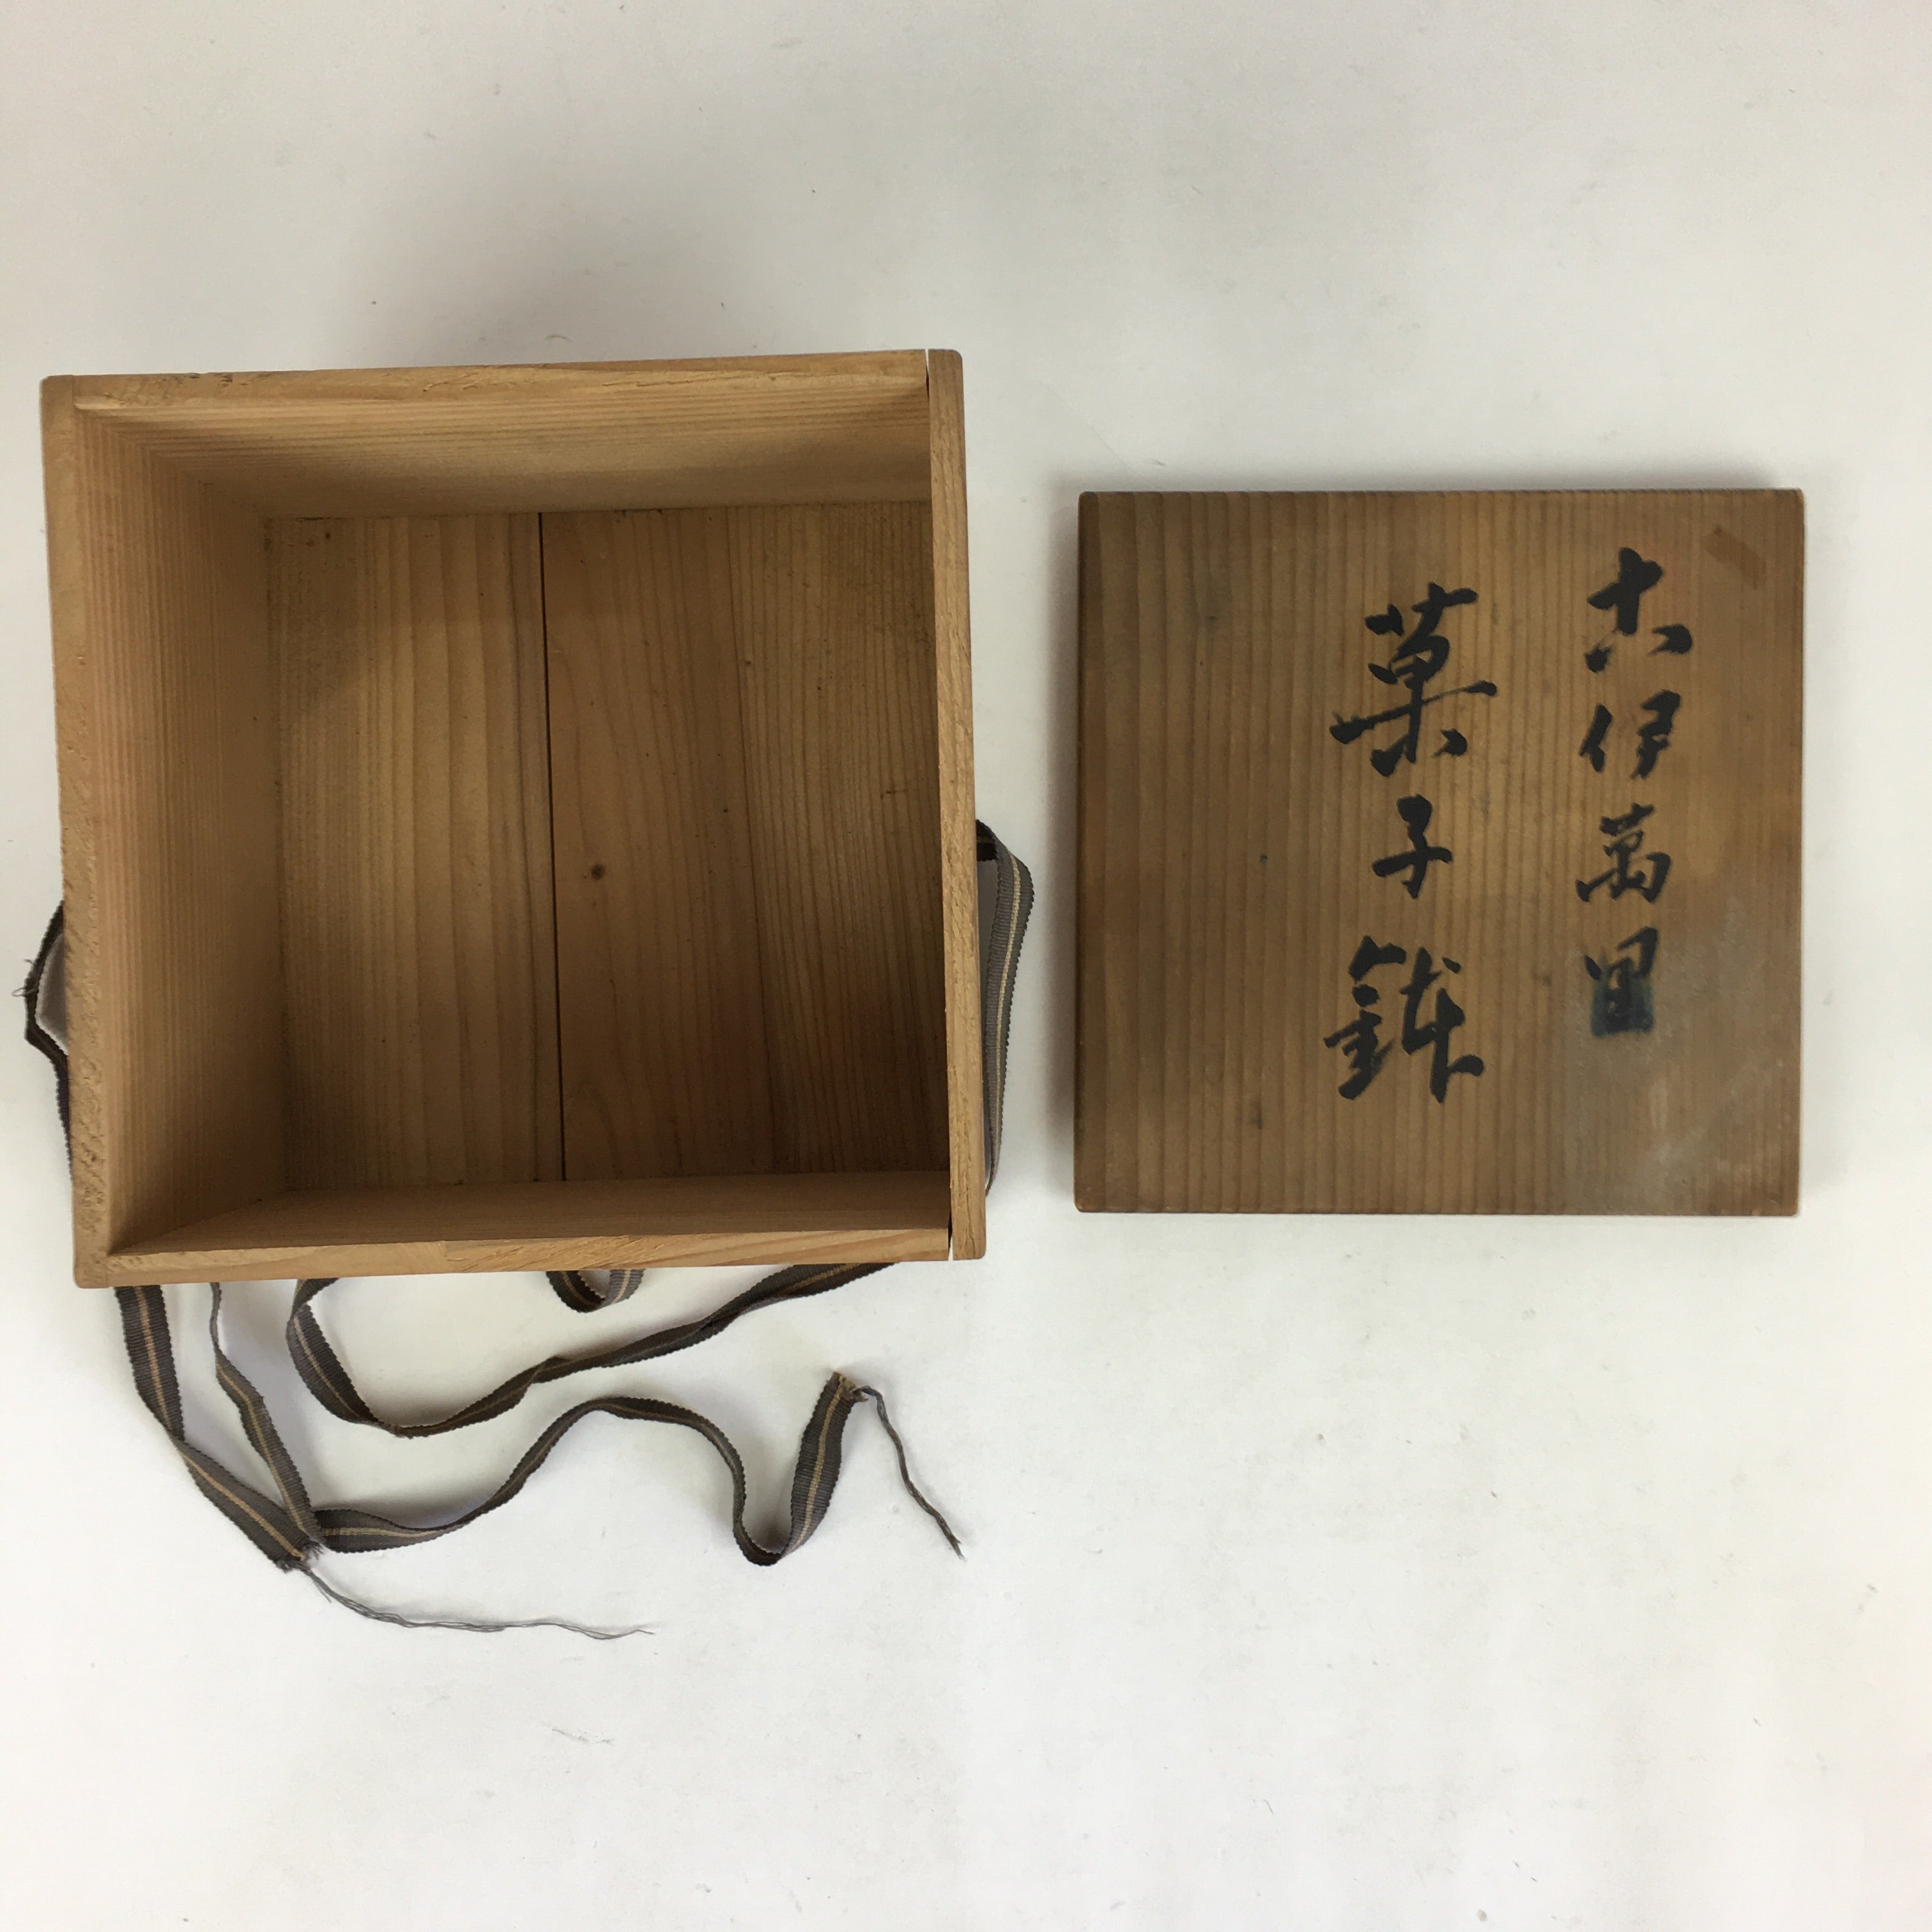 Japanese Wooden Storage Box Vtg Pottery Hako Inside 18.3x18.5x12.5cm WB943